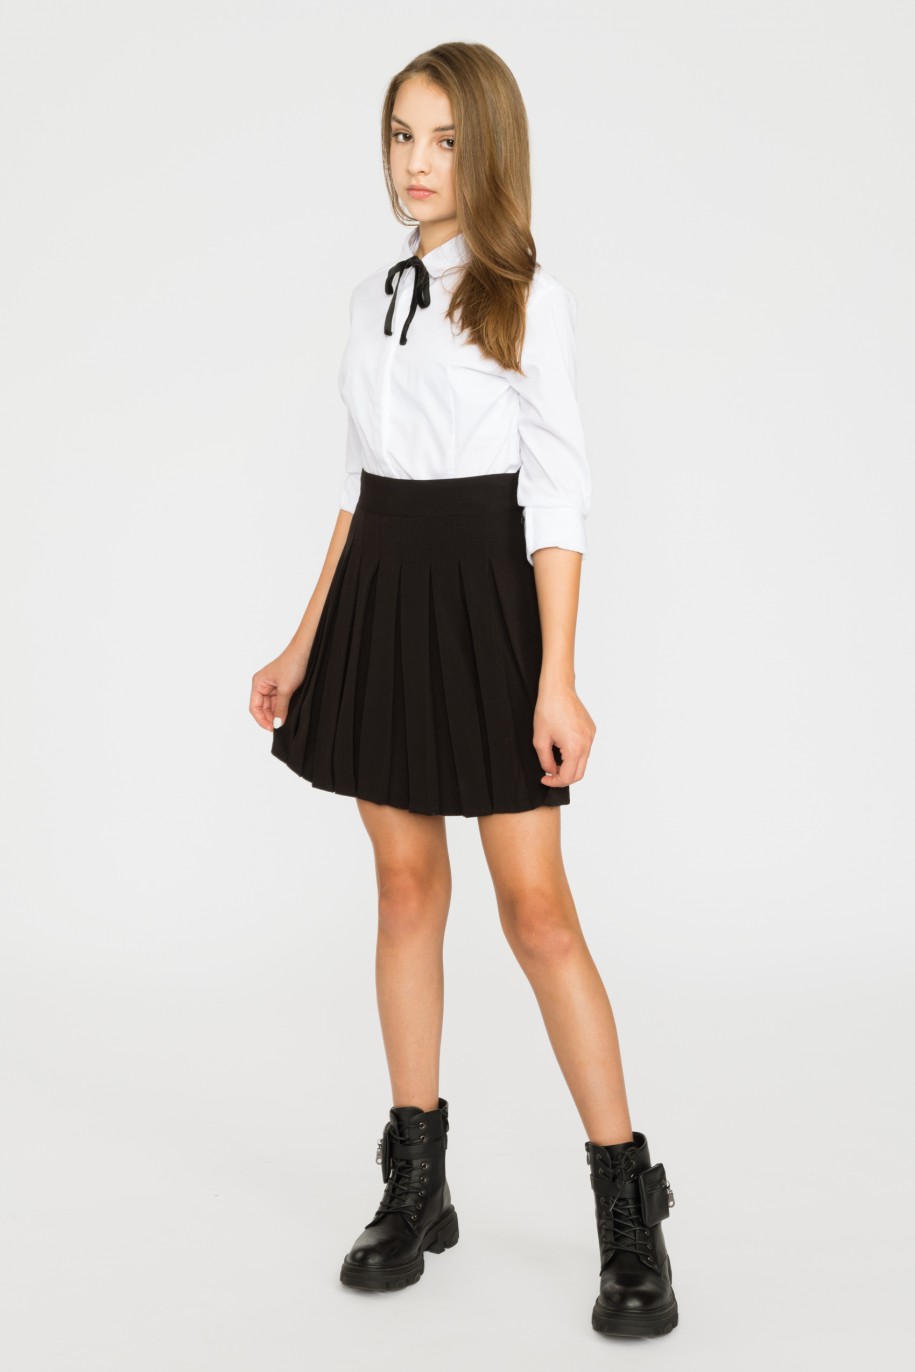 Biała elegancka koszula z ozdobną czarną tasiemką dla dziewczyny - 29414